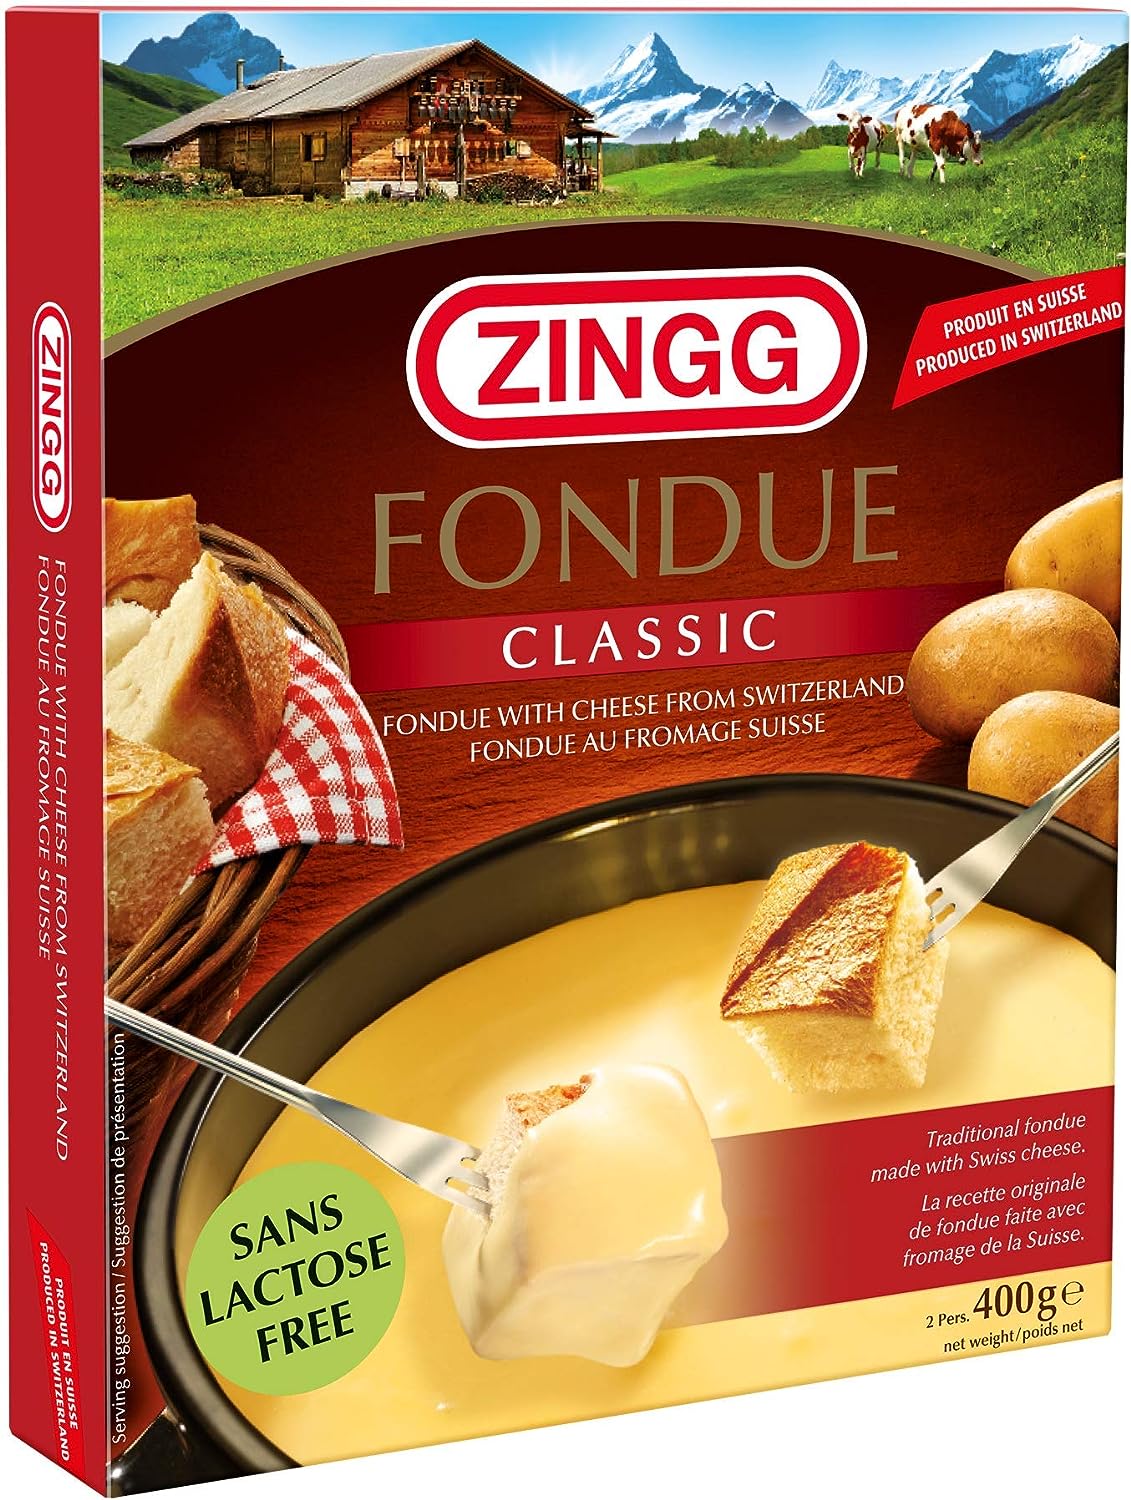 Swiss Knight Zingg Swiss Cheese Fondue 400g